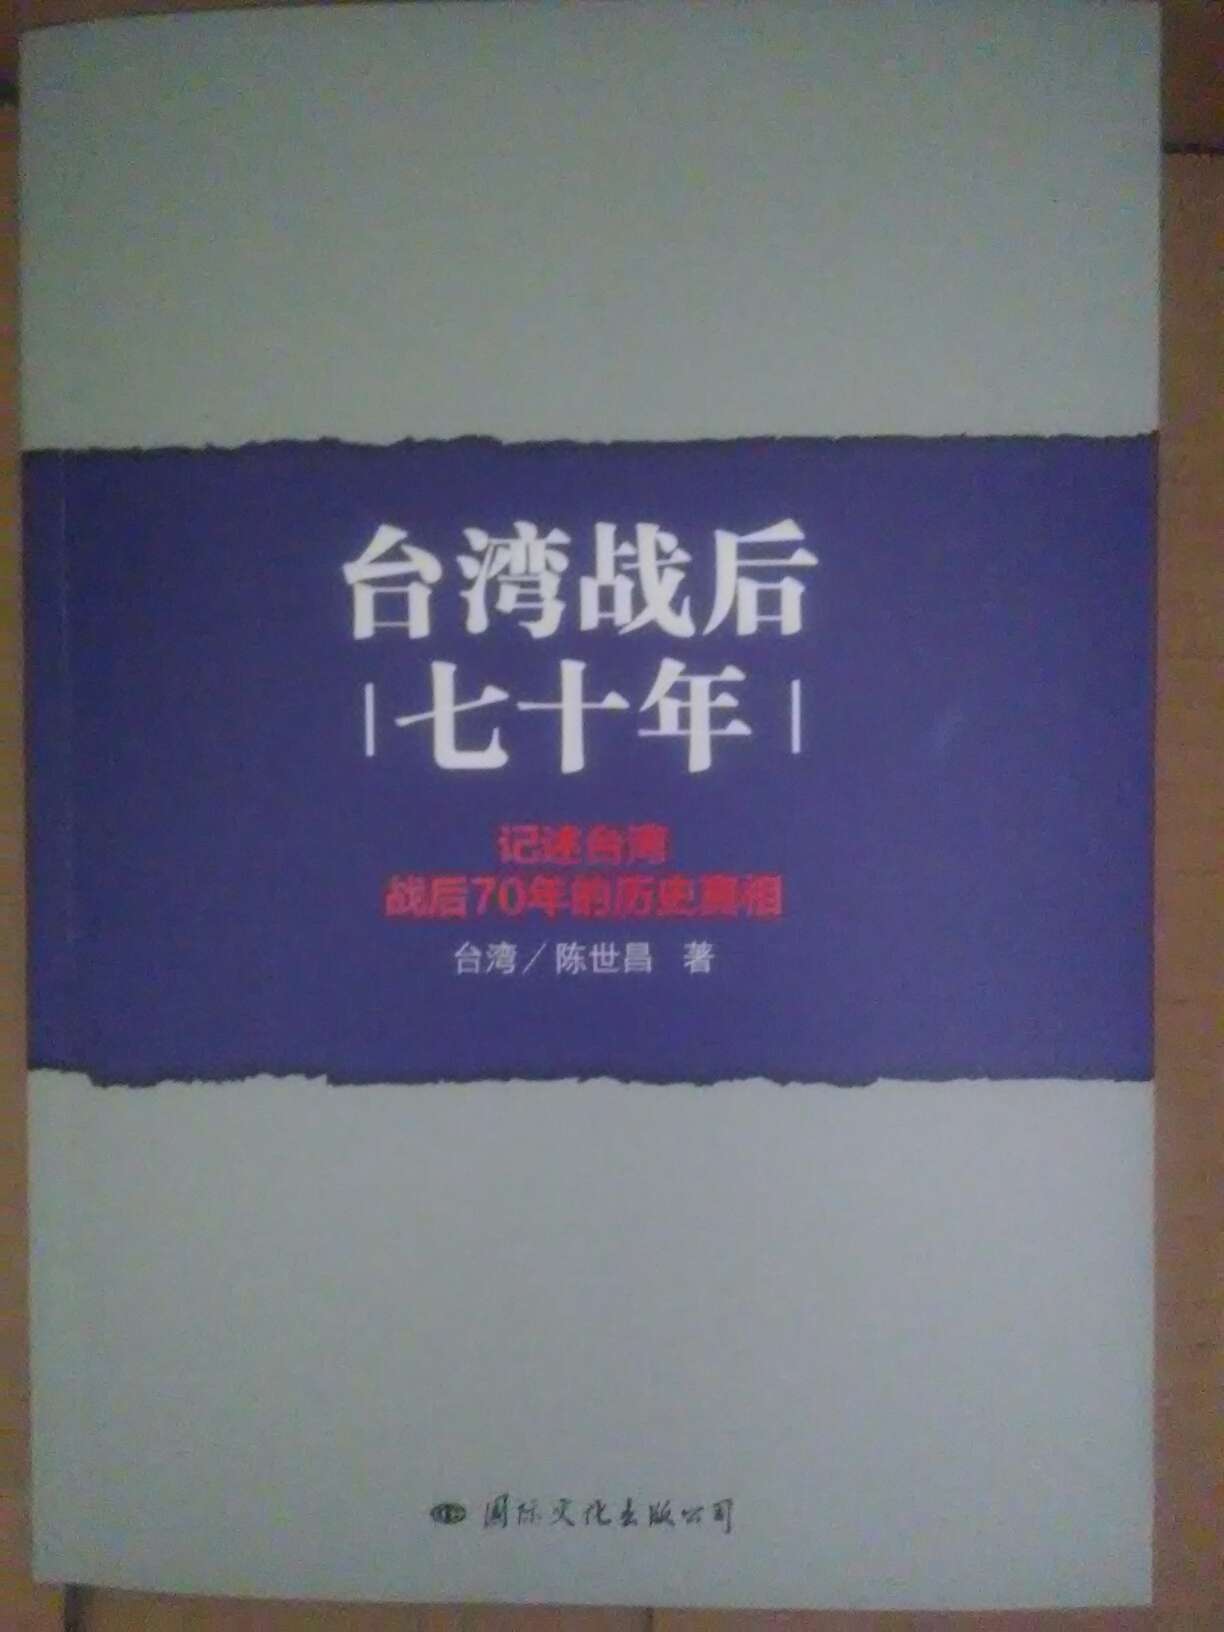 台湾人写的书，可以看看国民党的残暴，怎样造成了外省情结。可他们的洗脑也还是管用，作者仍然替这帮人的一些虚假宣传说话，而对共产党抱有微词。